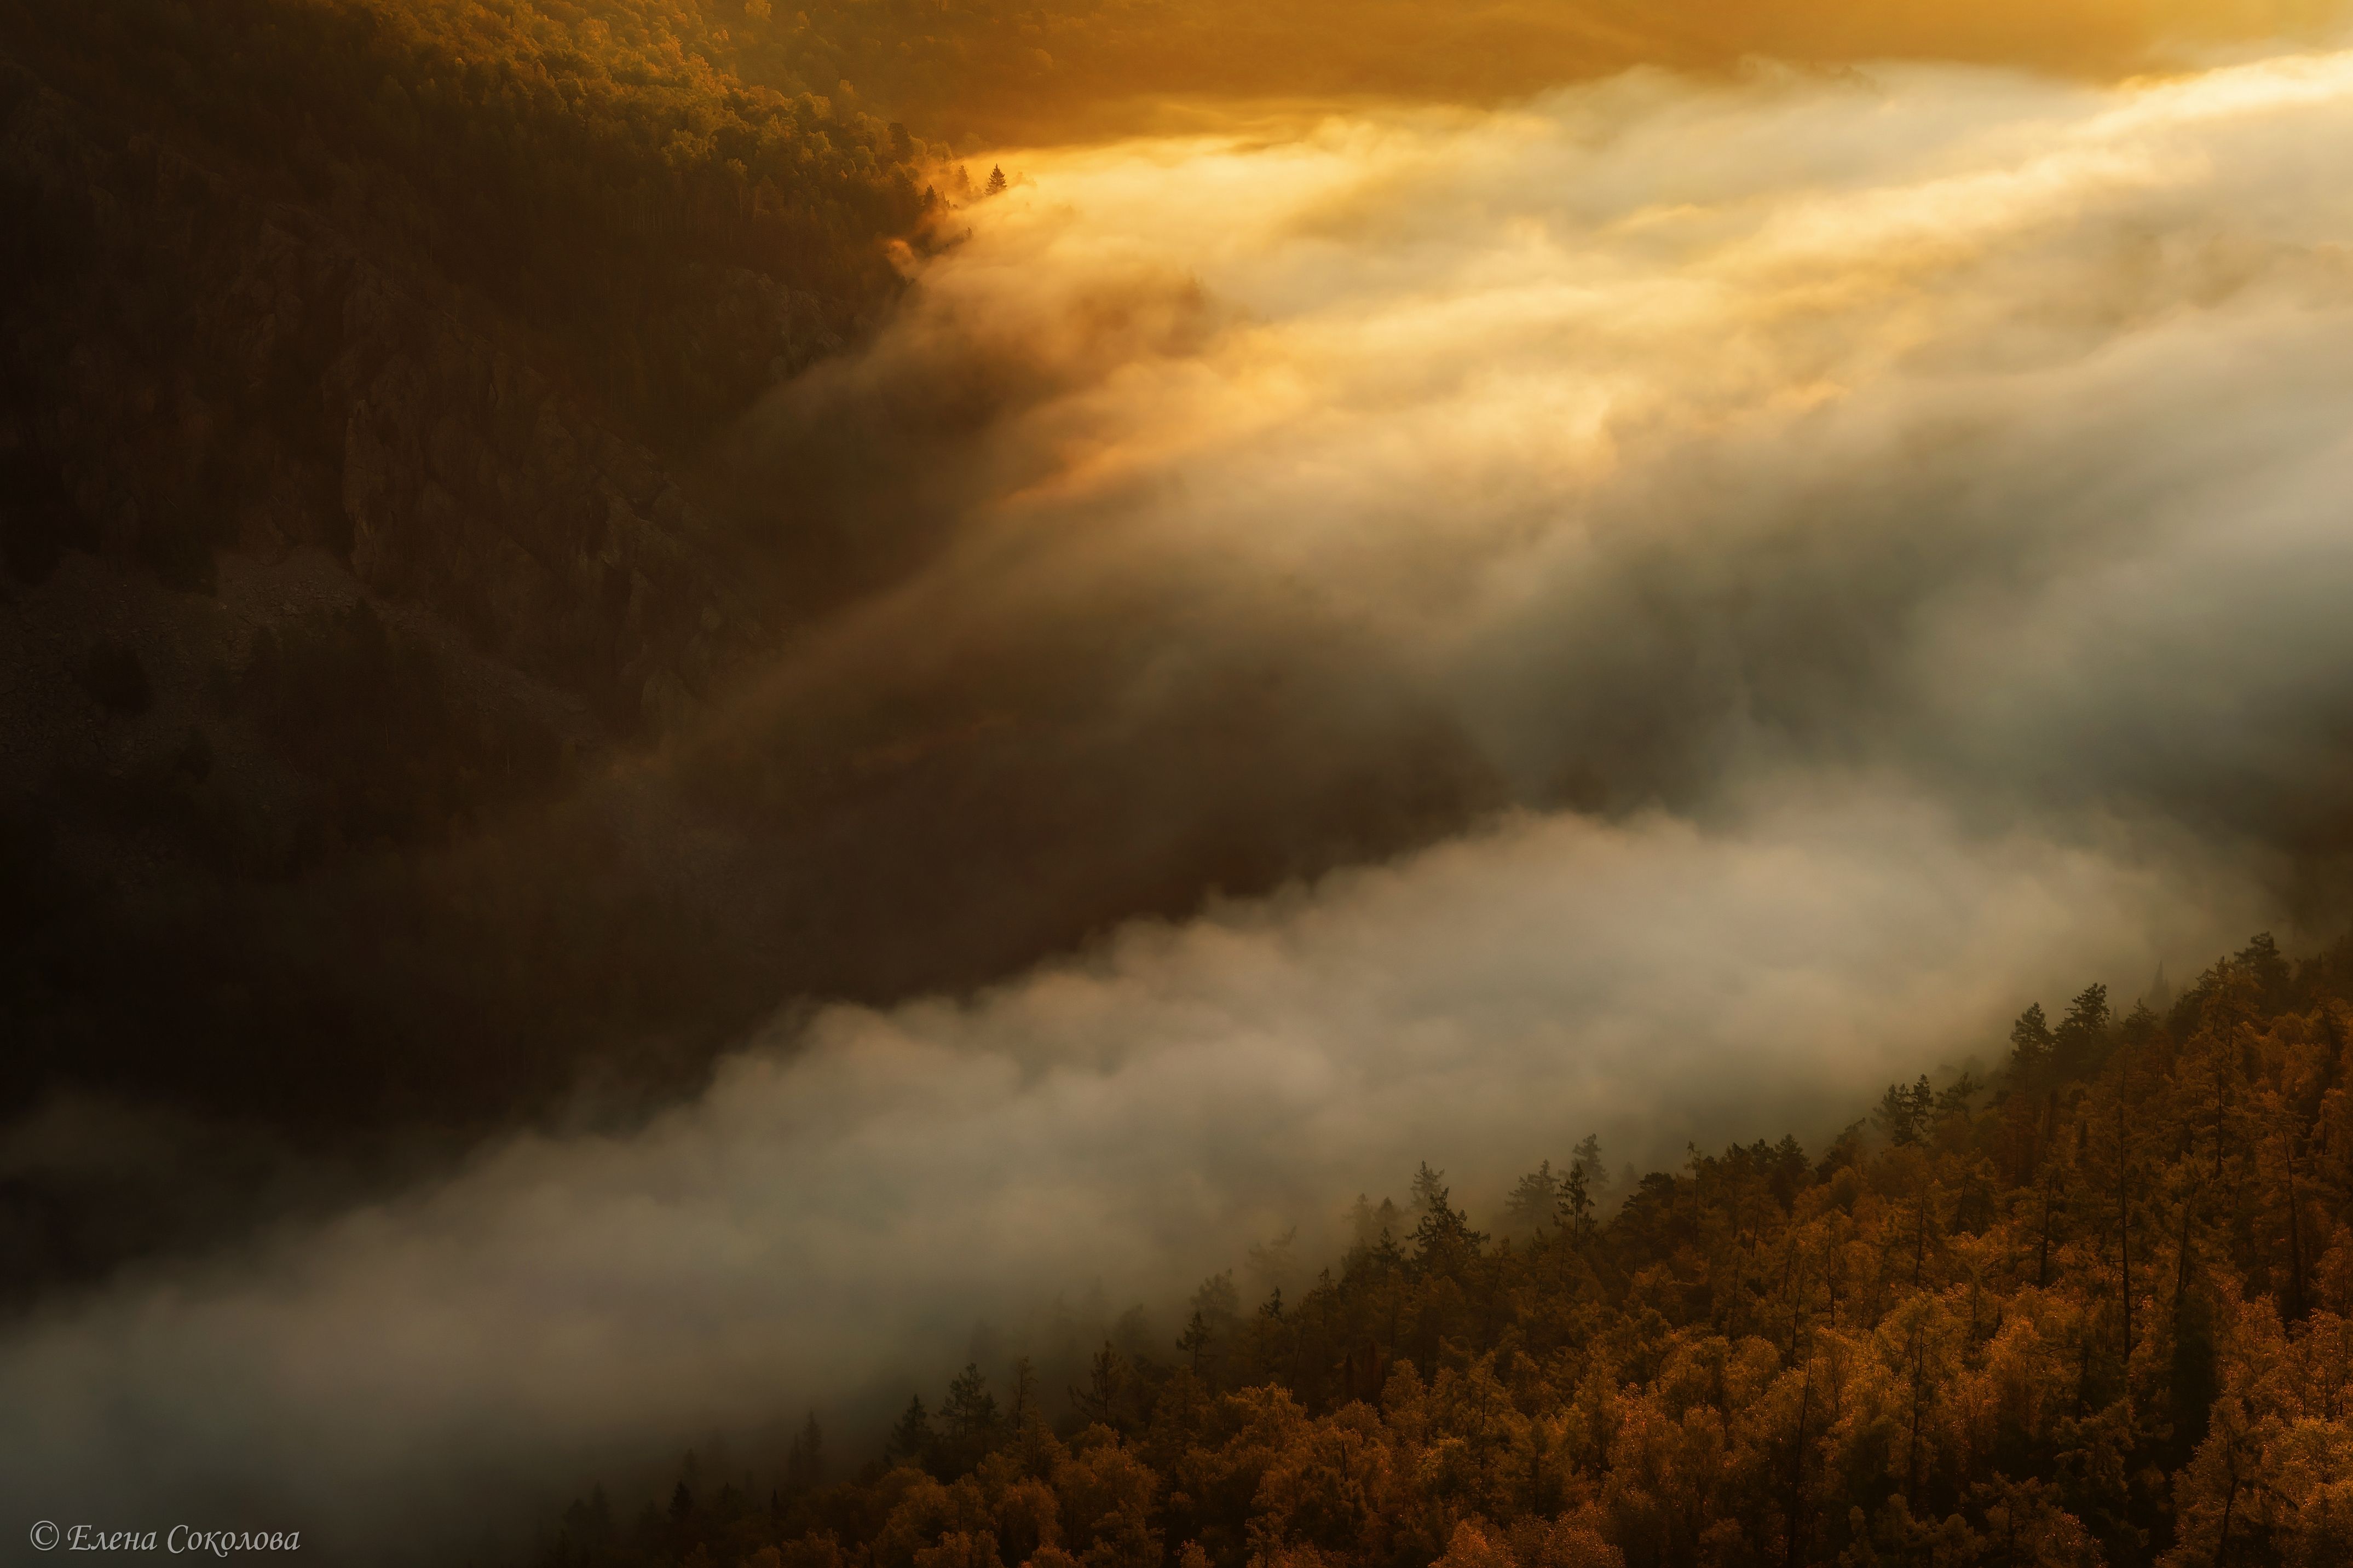 айгир, туман, дымка, утро, рассвет, летний пейзаж, осень, Соколова Елена